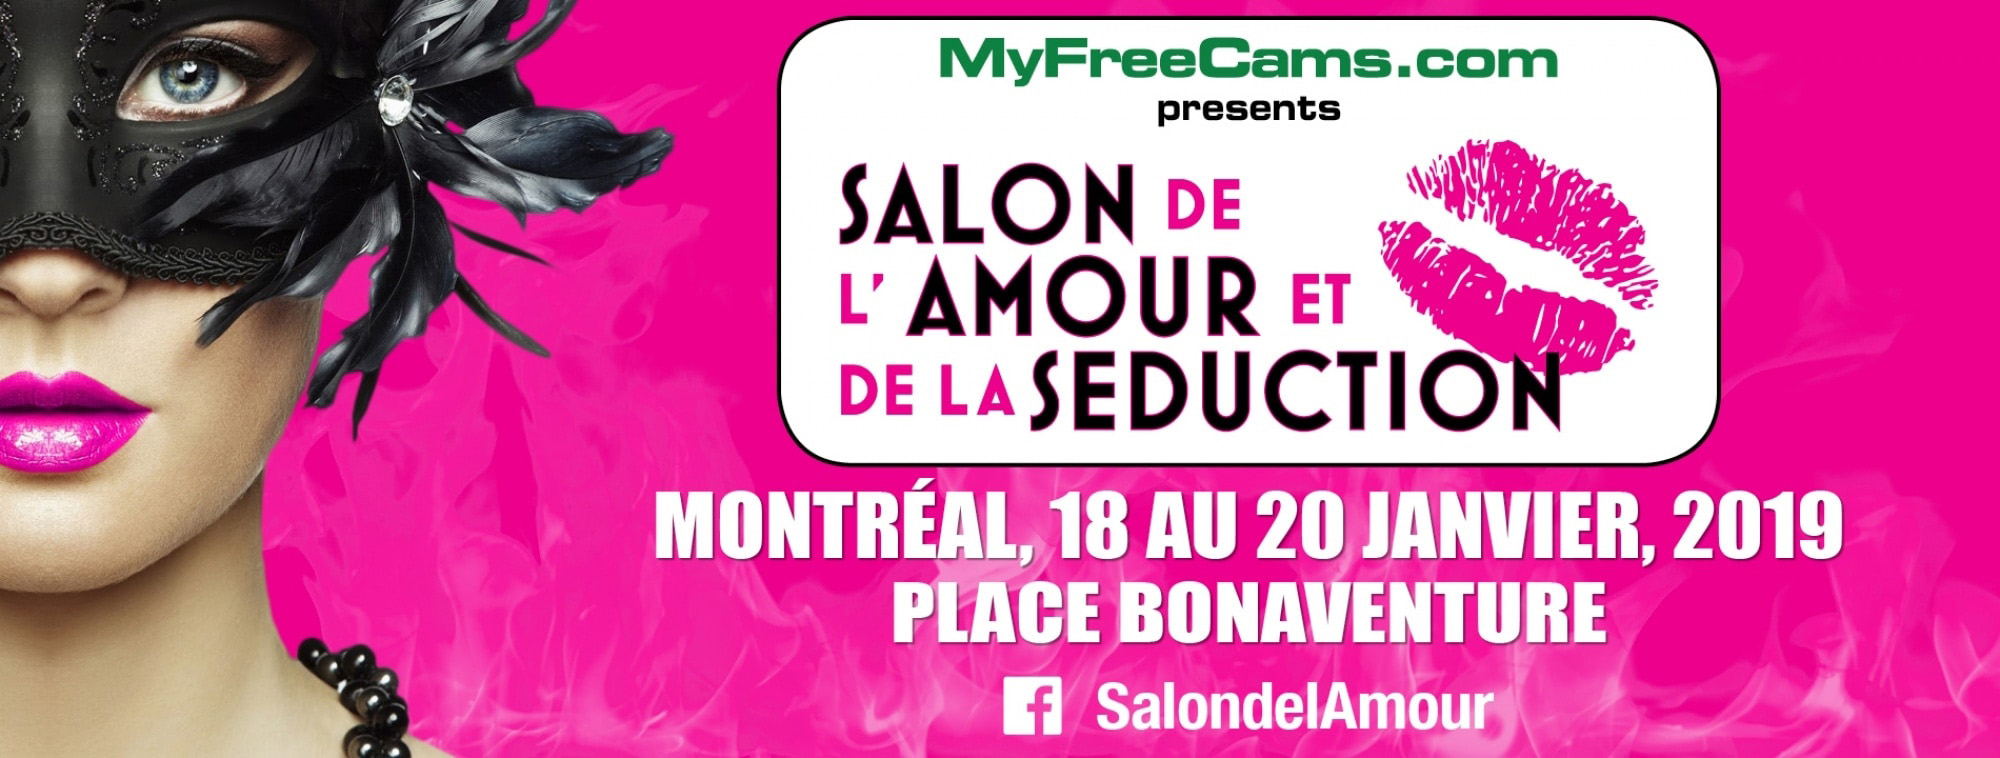 Le Salon de l’Amour et de la Seduction in Montreal: Ticket Giveaway!